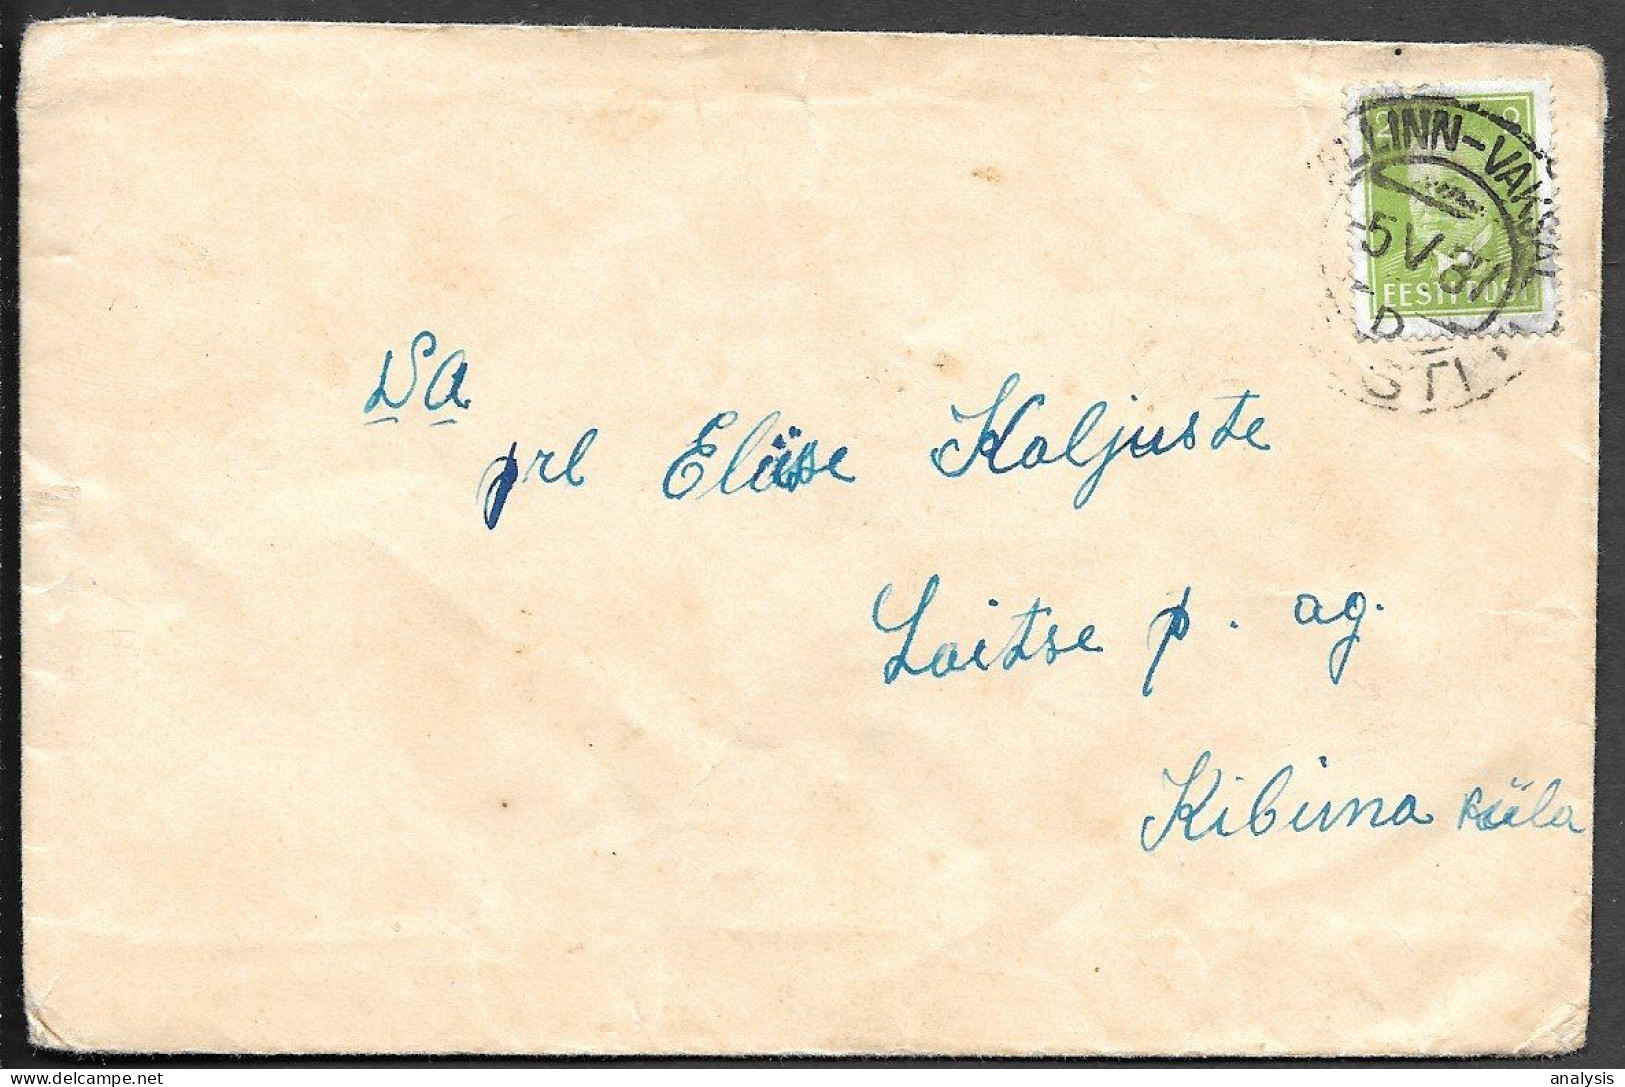 Estonia Tallinn-Vaksal Postmarked Cover Mailed 1937. 2s President Paets Stamp - Estonia